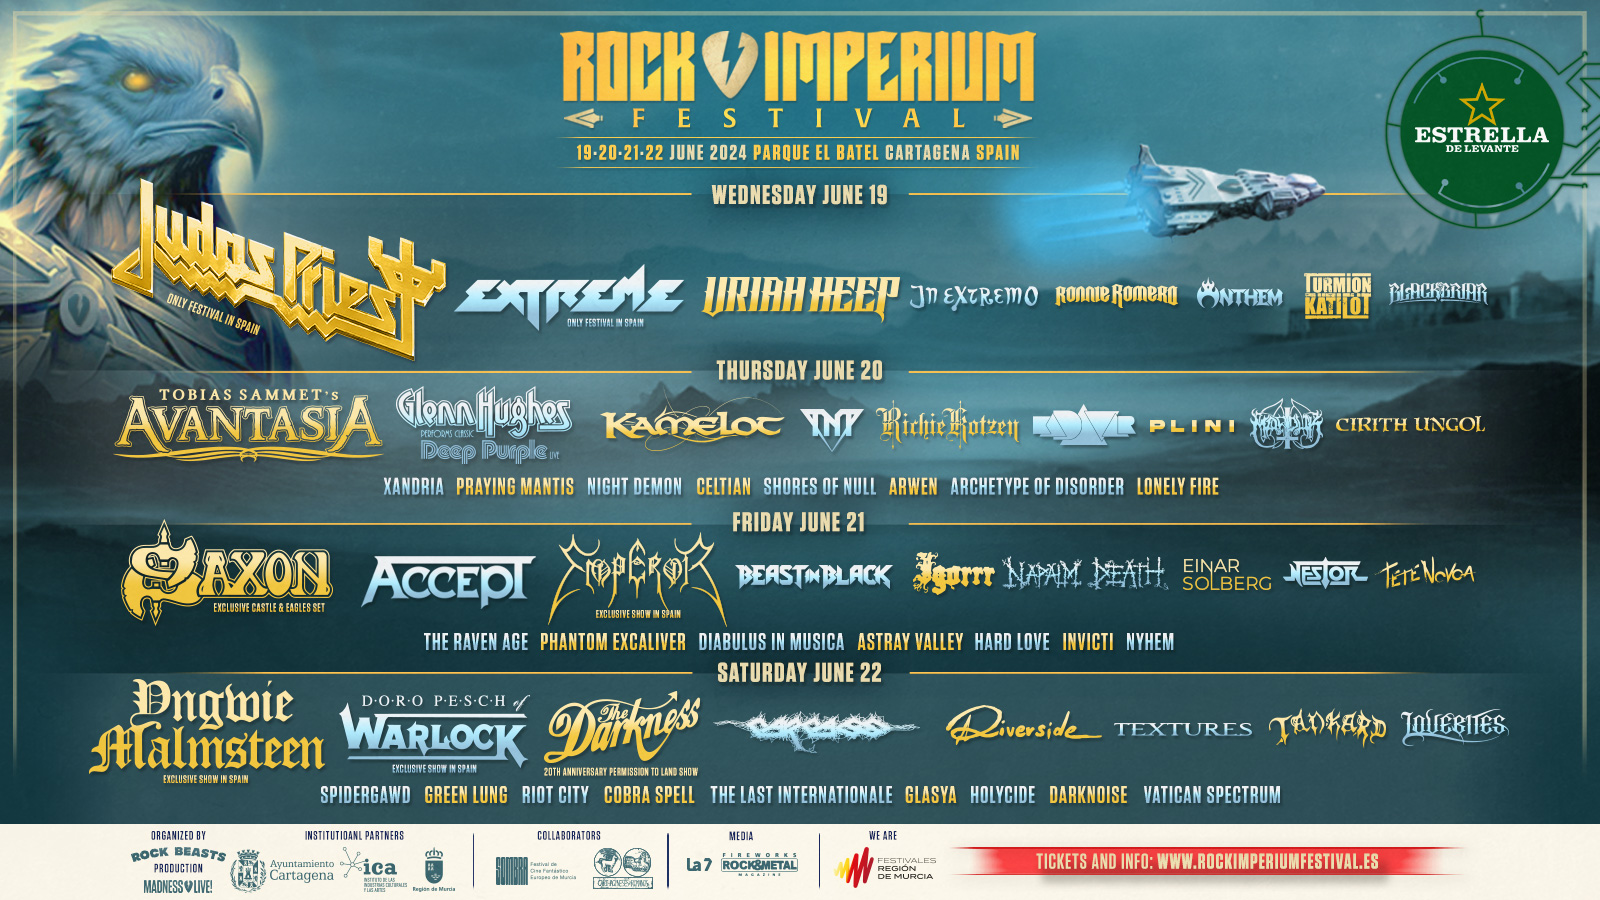 www.rockimperiumfestival.es